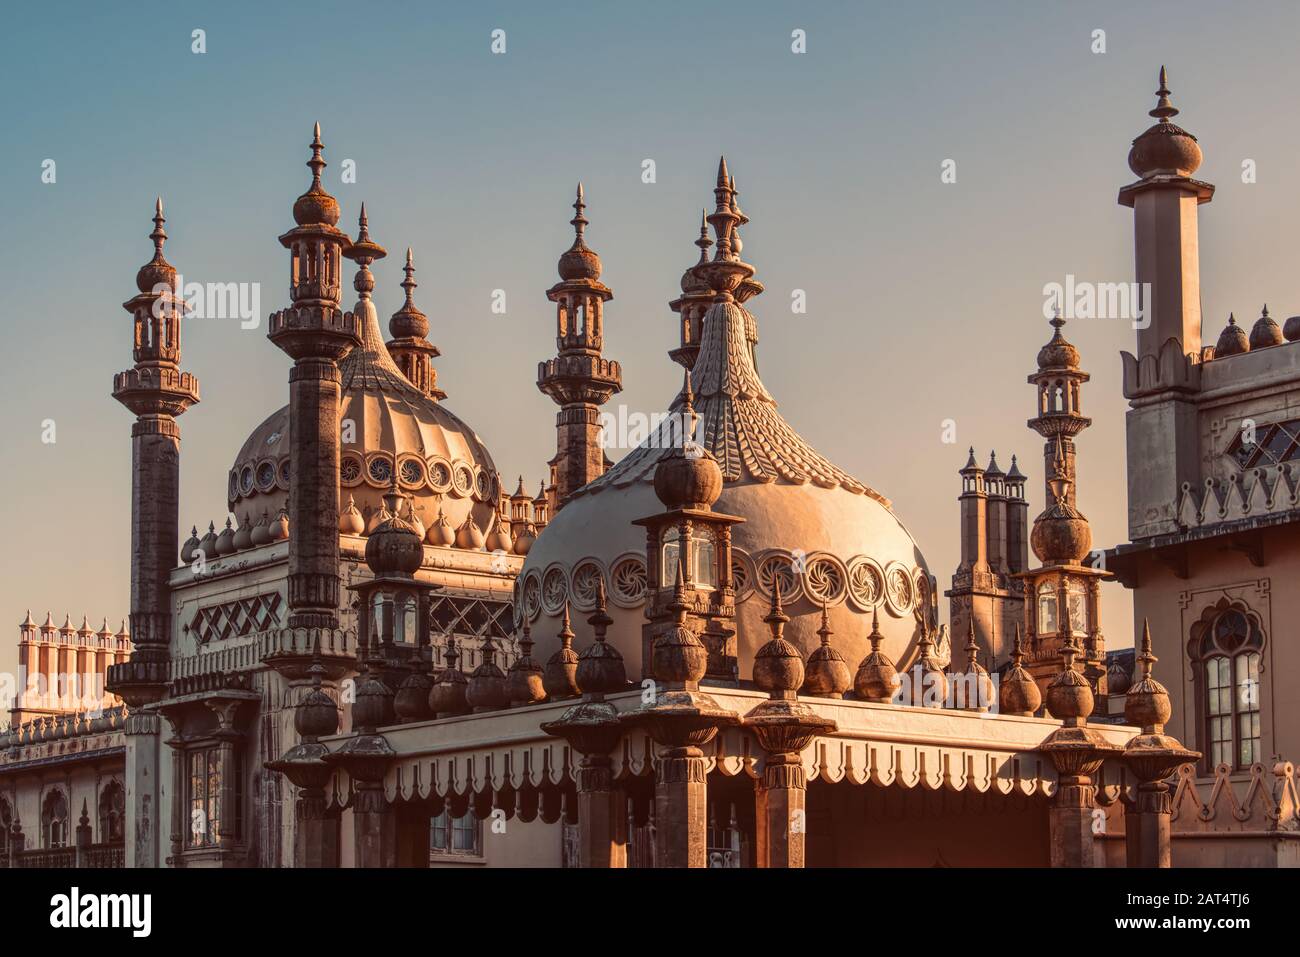 Brighton Pavilion, der Royal Pavilion in Brighton, Großbritannien. Zwiebelkuppeln und Minarette auf dem Dach. Architektur im indischen Stil und ein wichtiger Meilenstein. Stockfoto